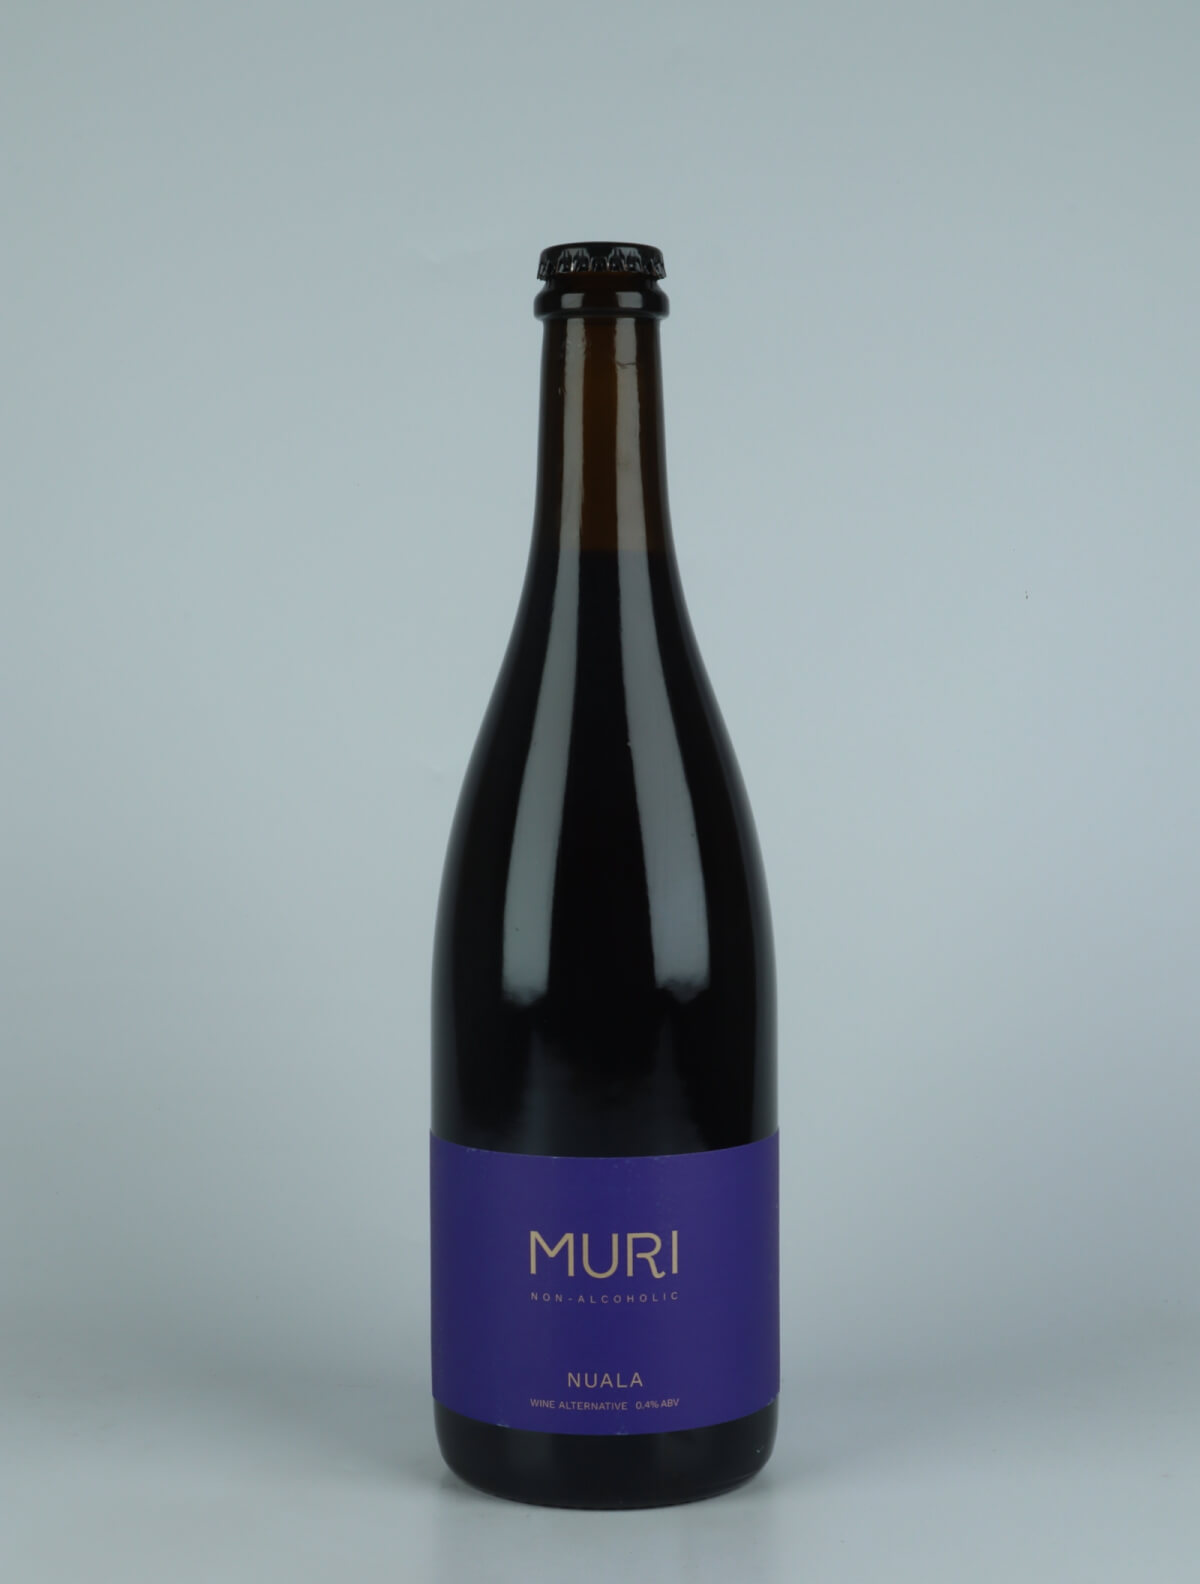 A bottle N.V. Nuala Non-alcoholic from Muri, Copenhagen in Denmark